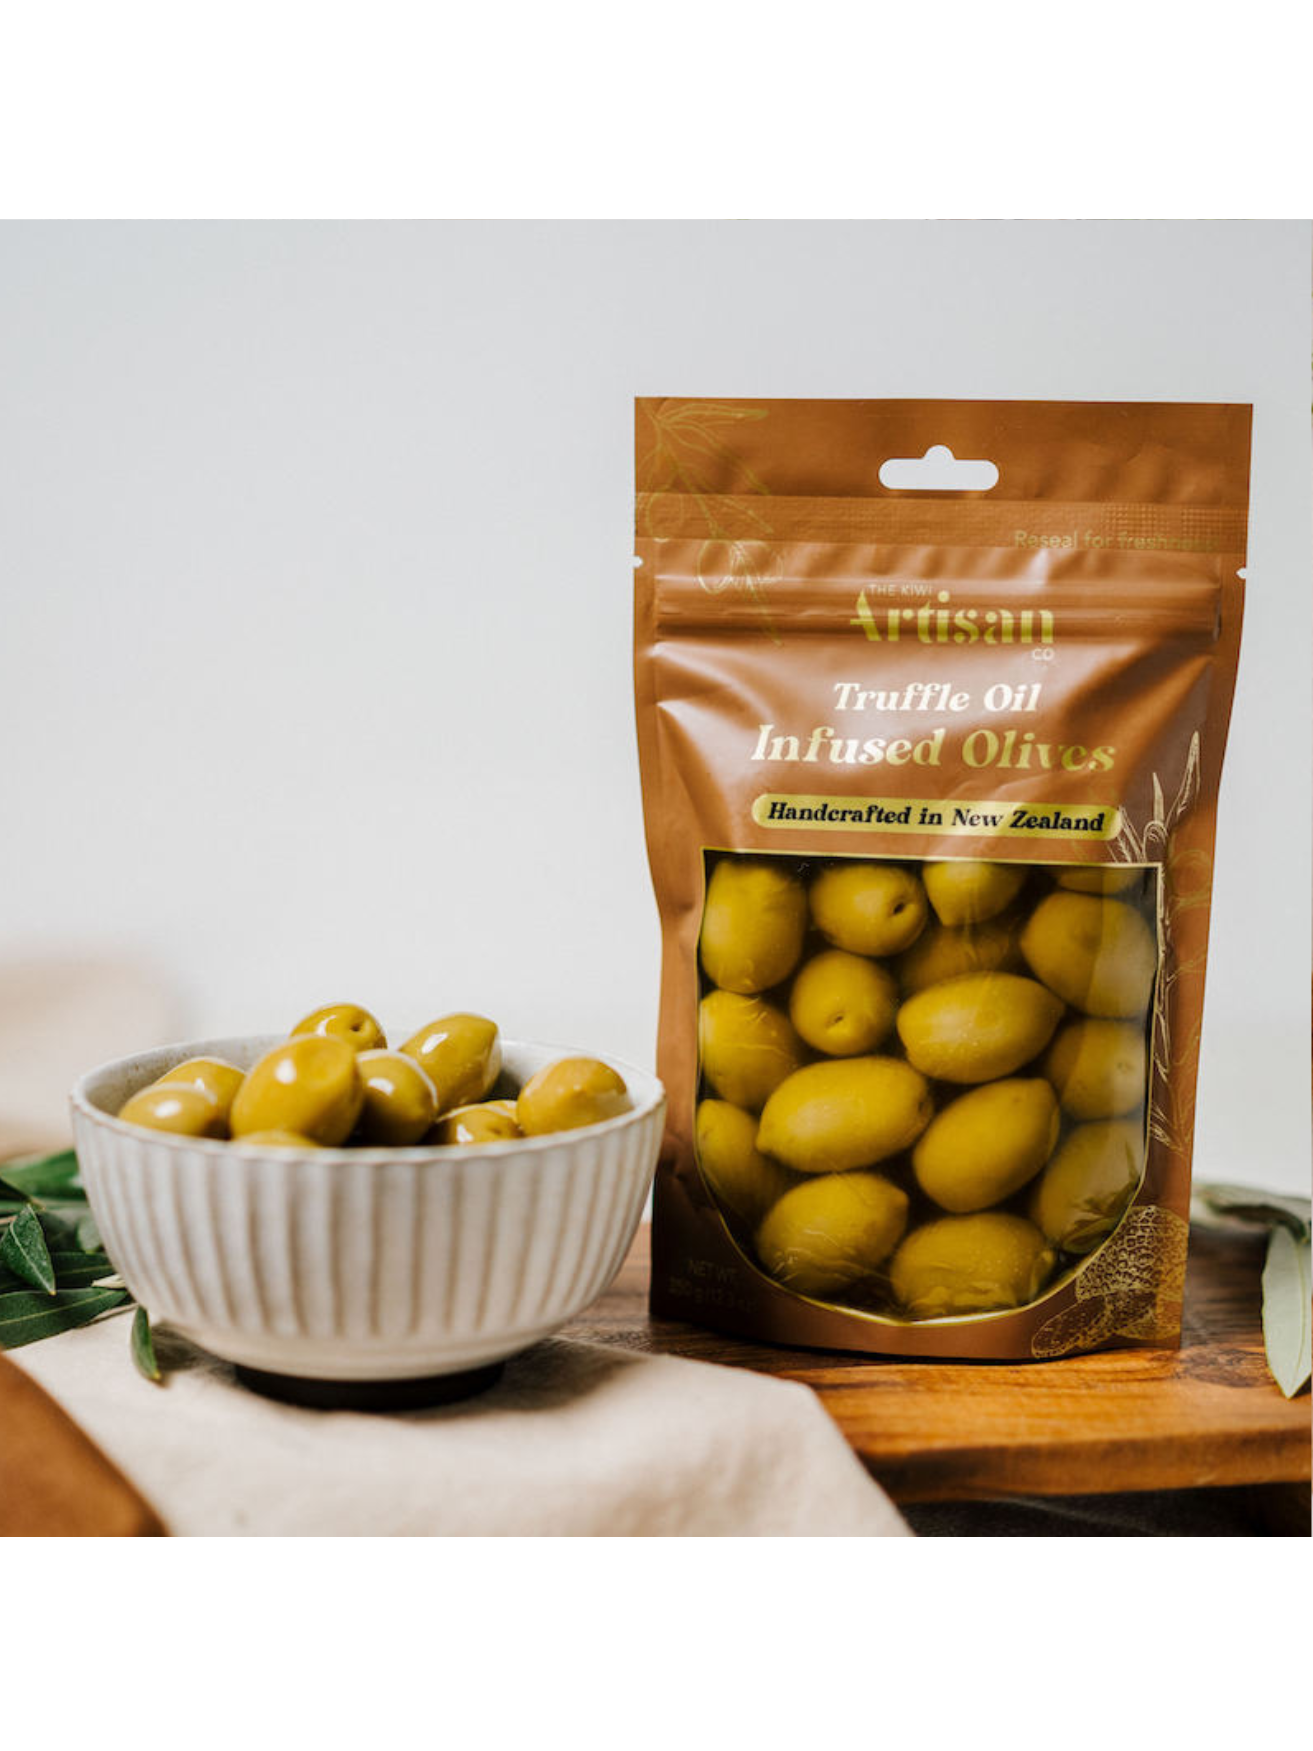 The Kiwi Artisan Truffle Infused Olives 150g